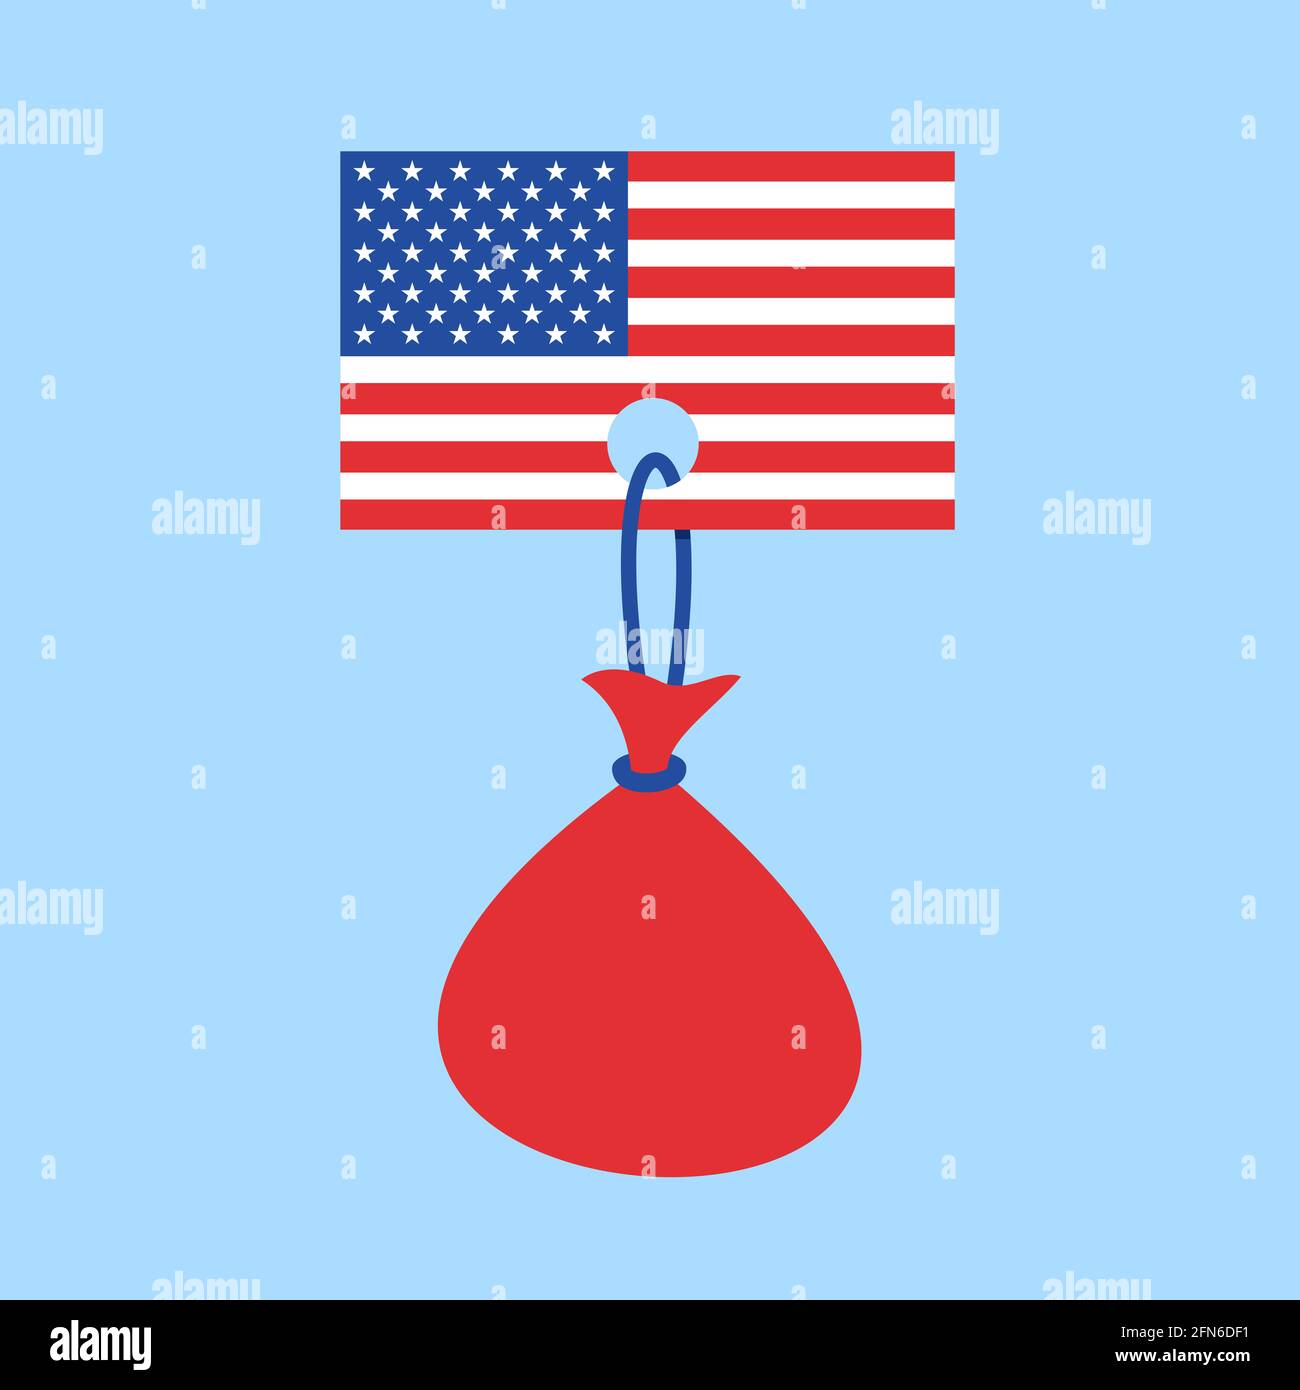 Bandera de EE.UU. Con carga pesada - metáfora del estado, país, nación y deuda de Estados Unidos, ser endeudado, responsabilidad. Concepto de deuda pública, nacional Foto de stock